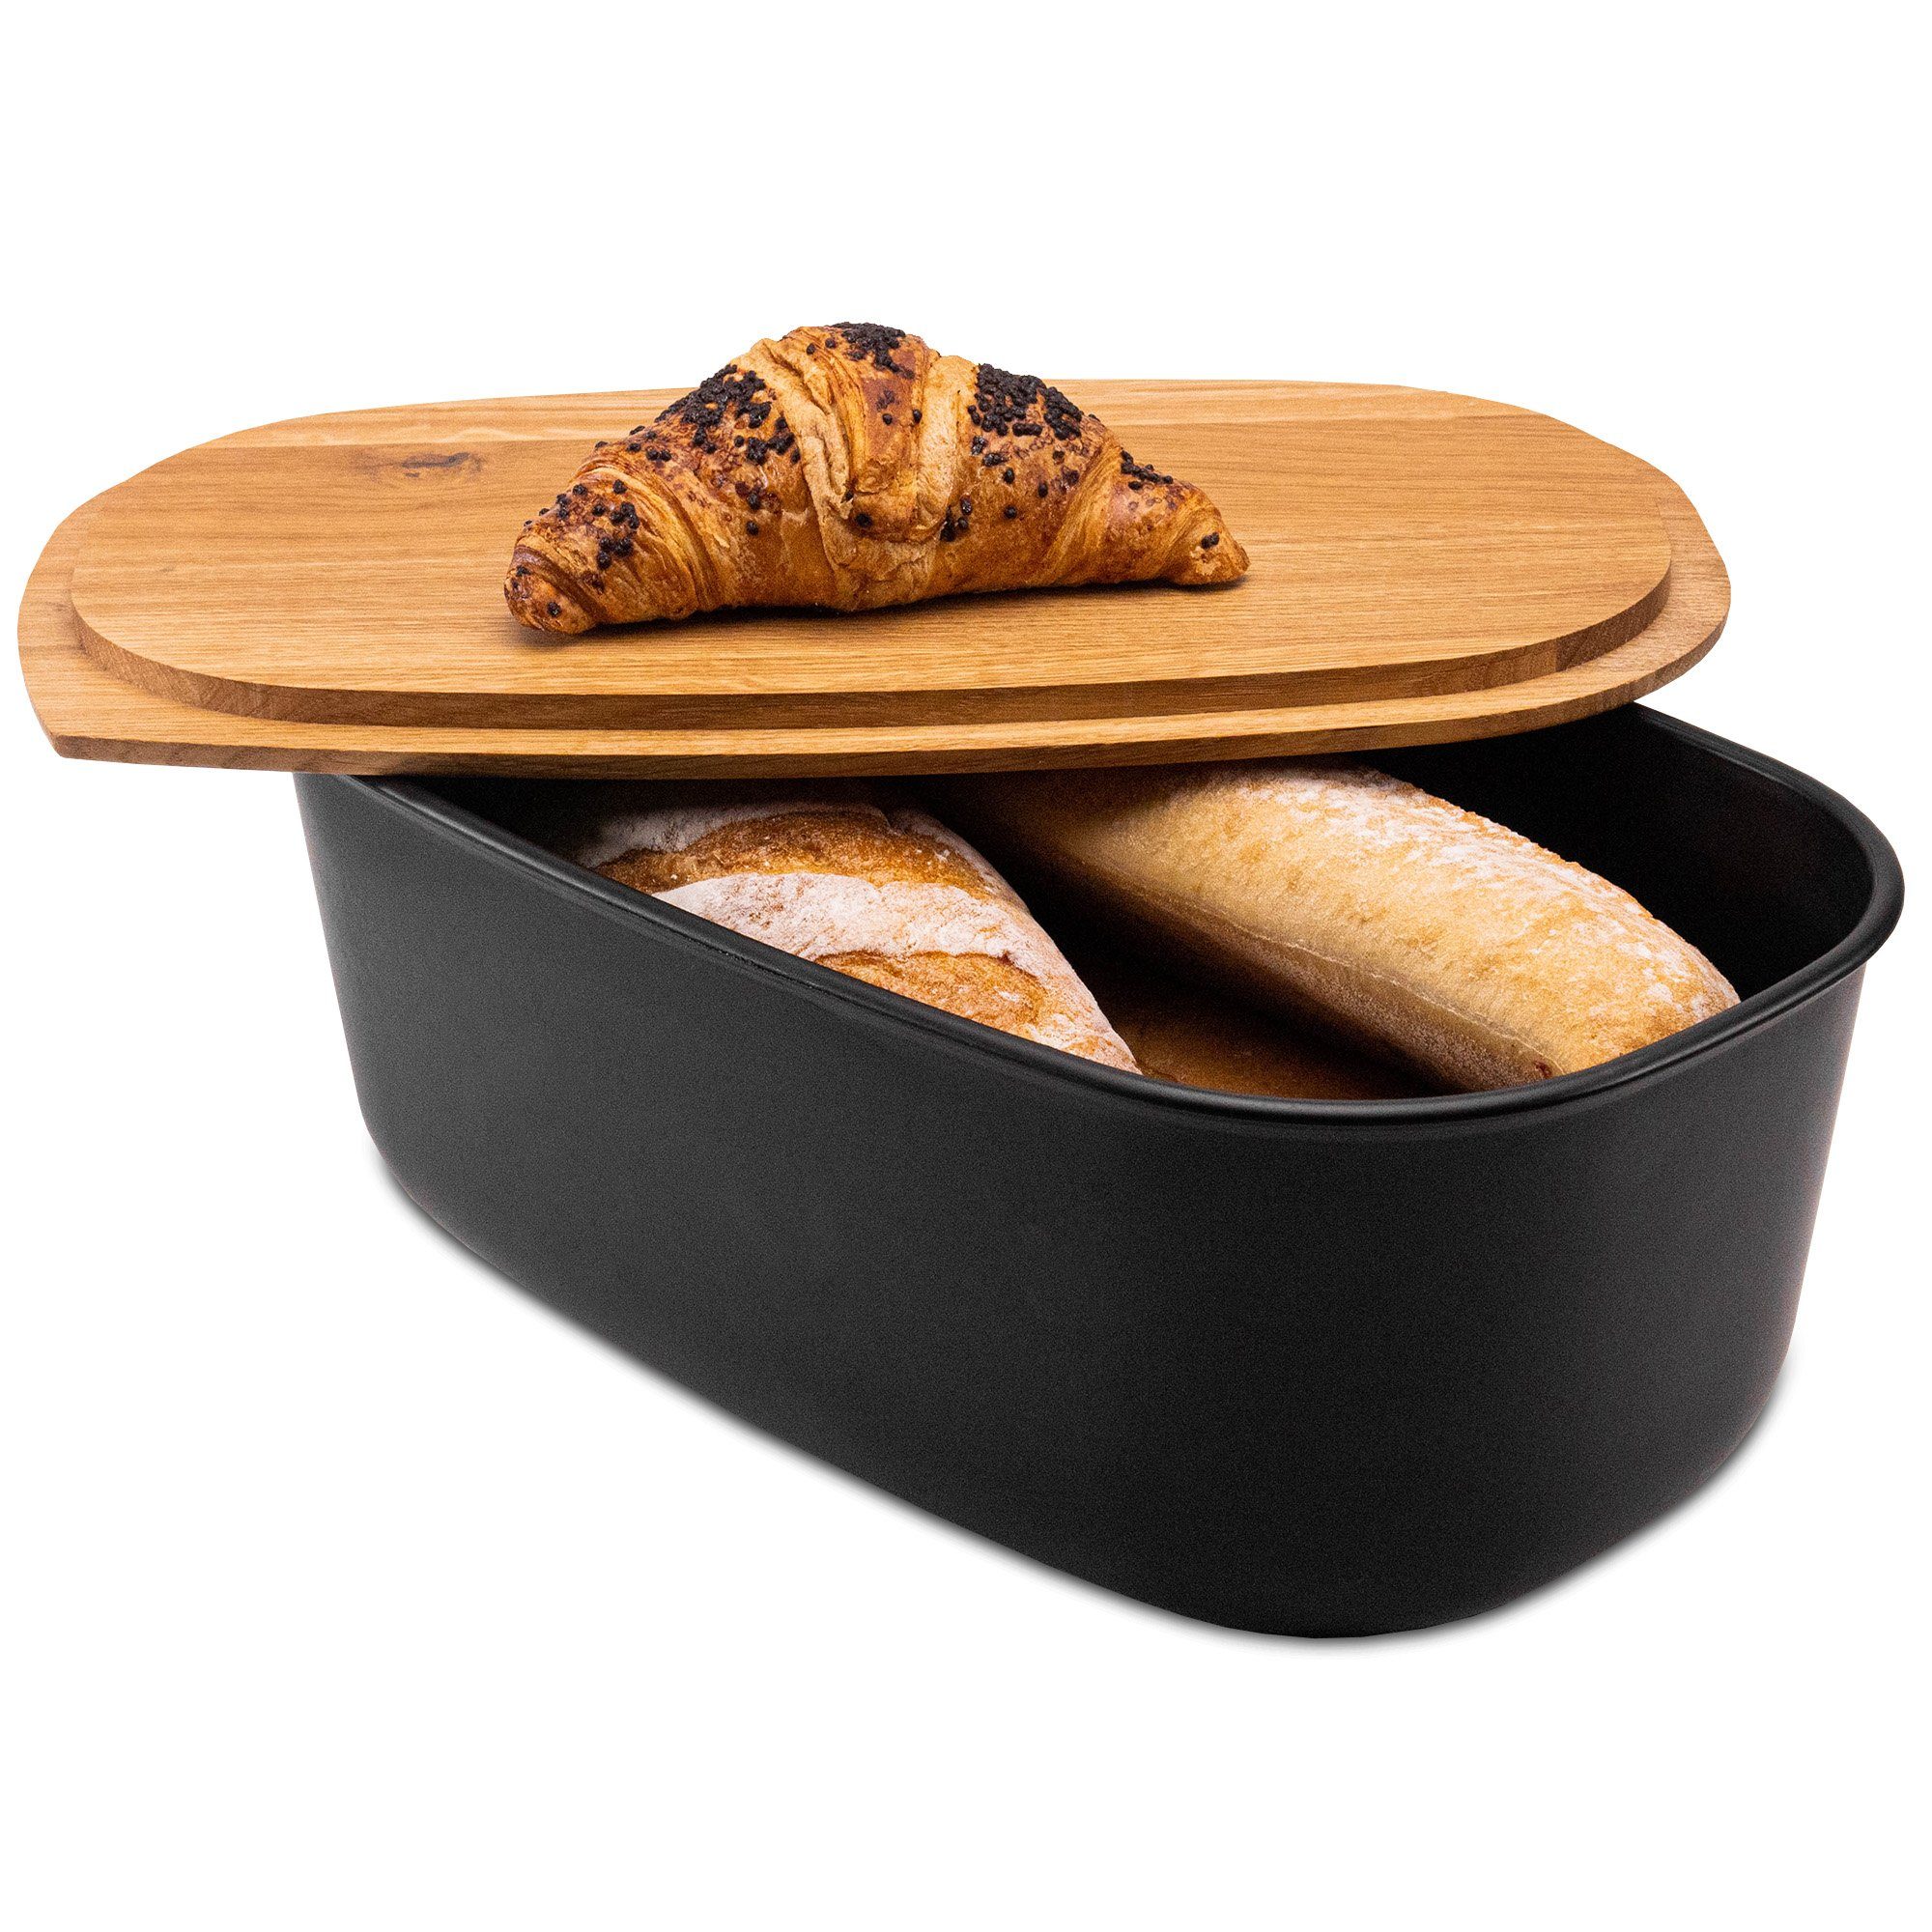 KONZEPT Brotkasten Brotkasten mit Schneidebrett aus Holz 2in1 Brotbox, Groß, BPA-frei, europäische Produktion Schwarz